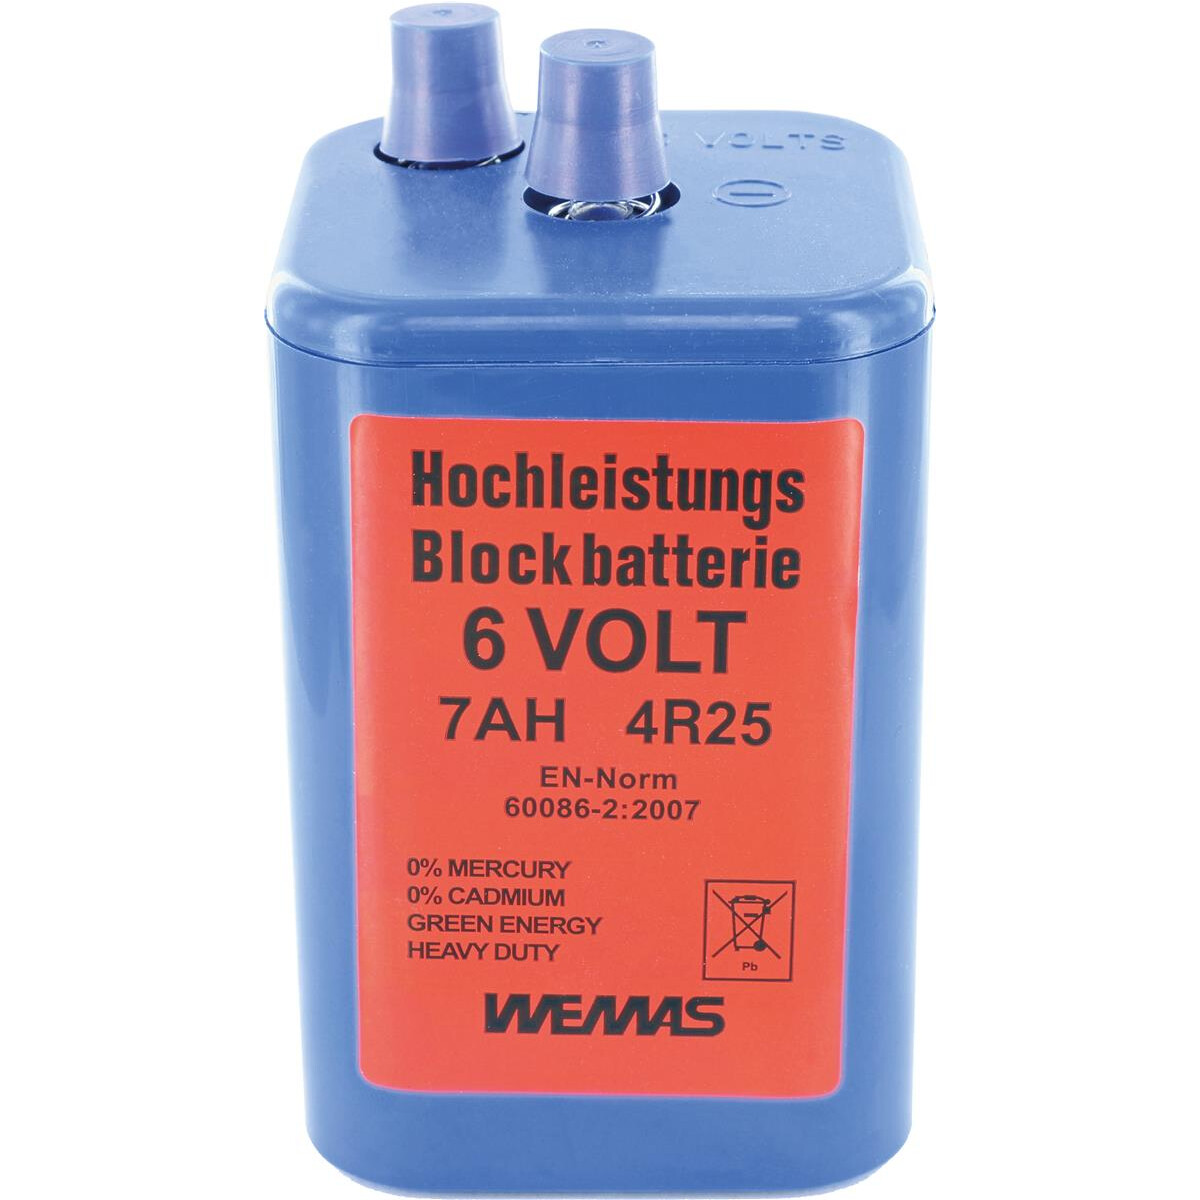 Blockbatterie 6V, 4,95 €